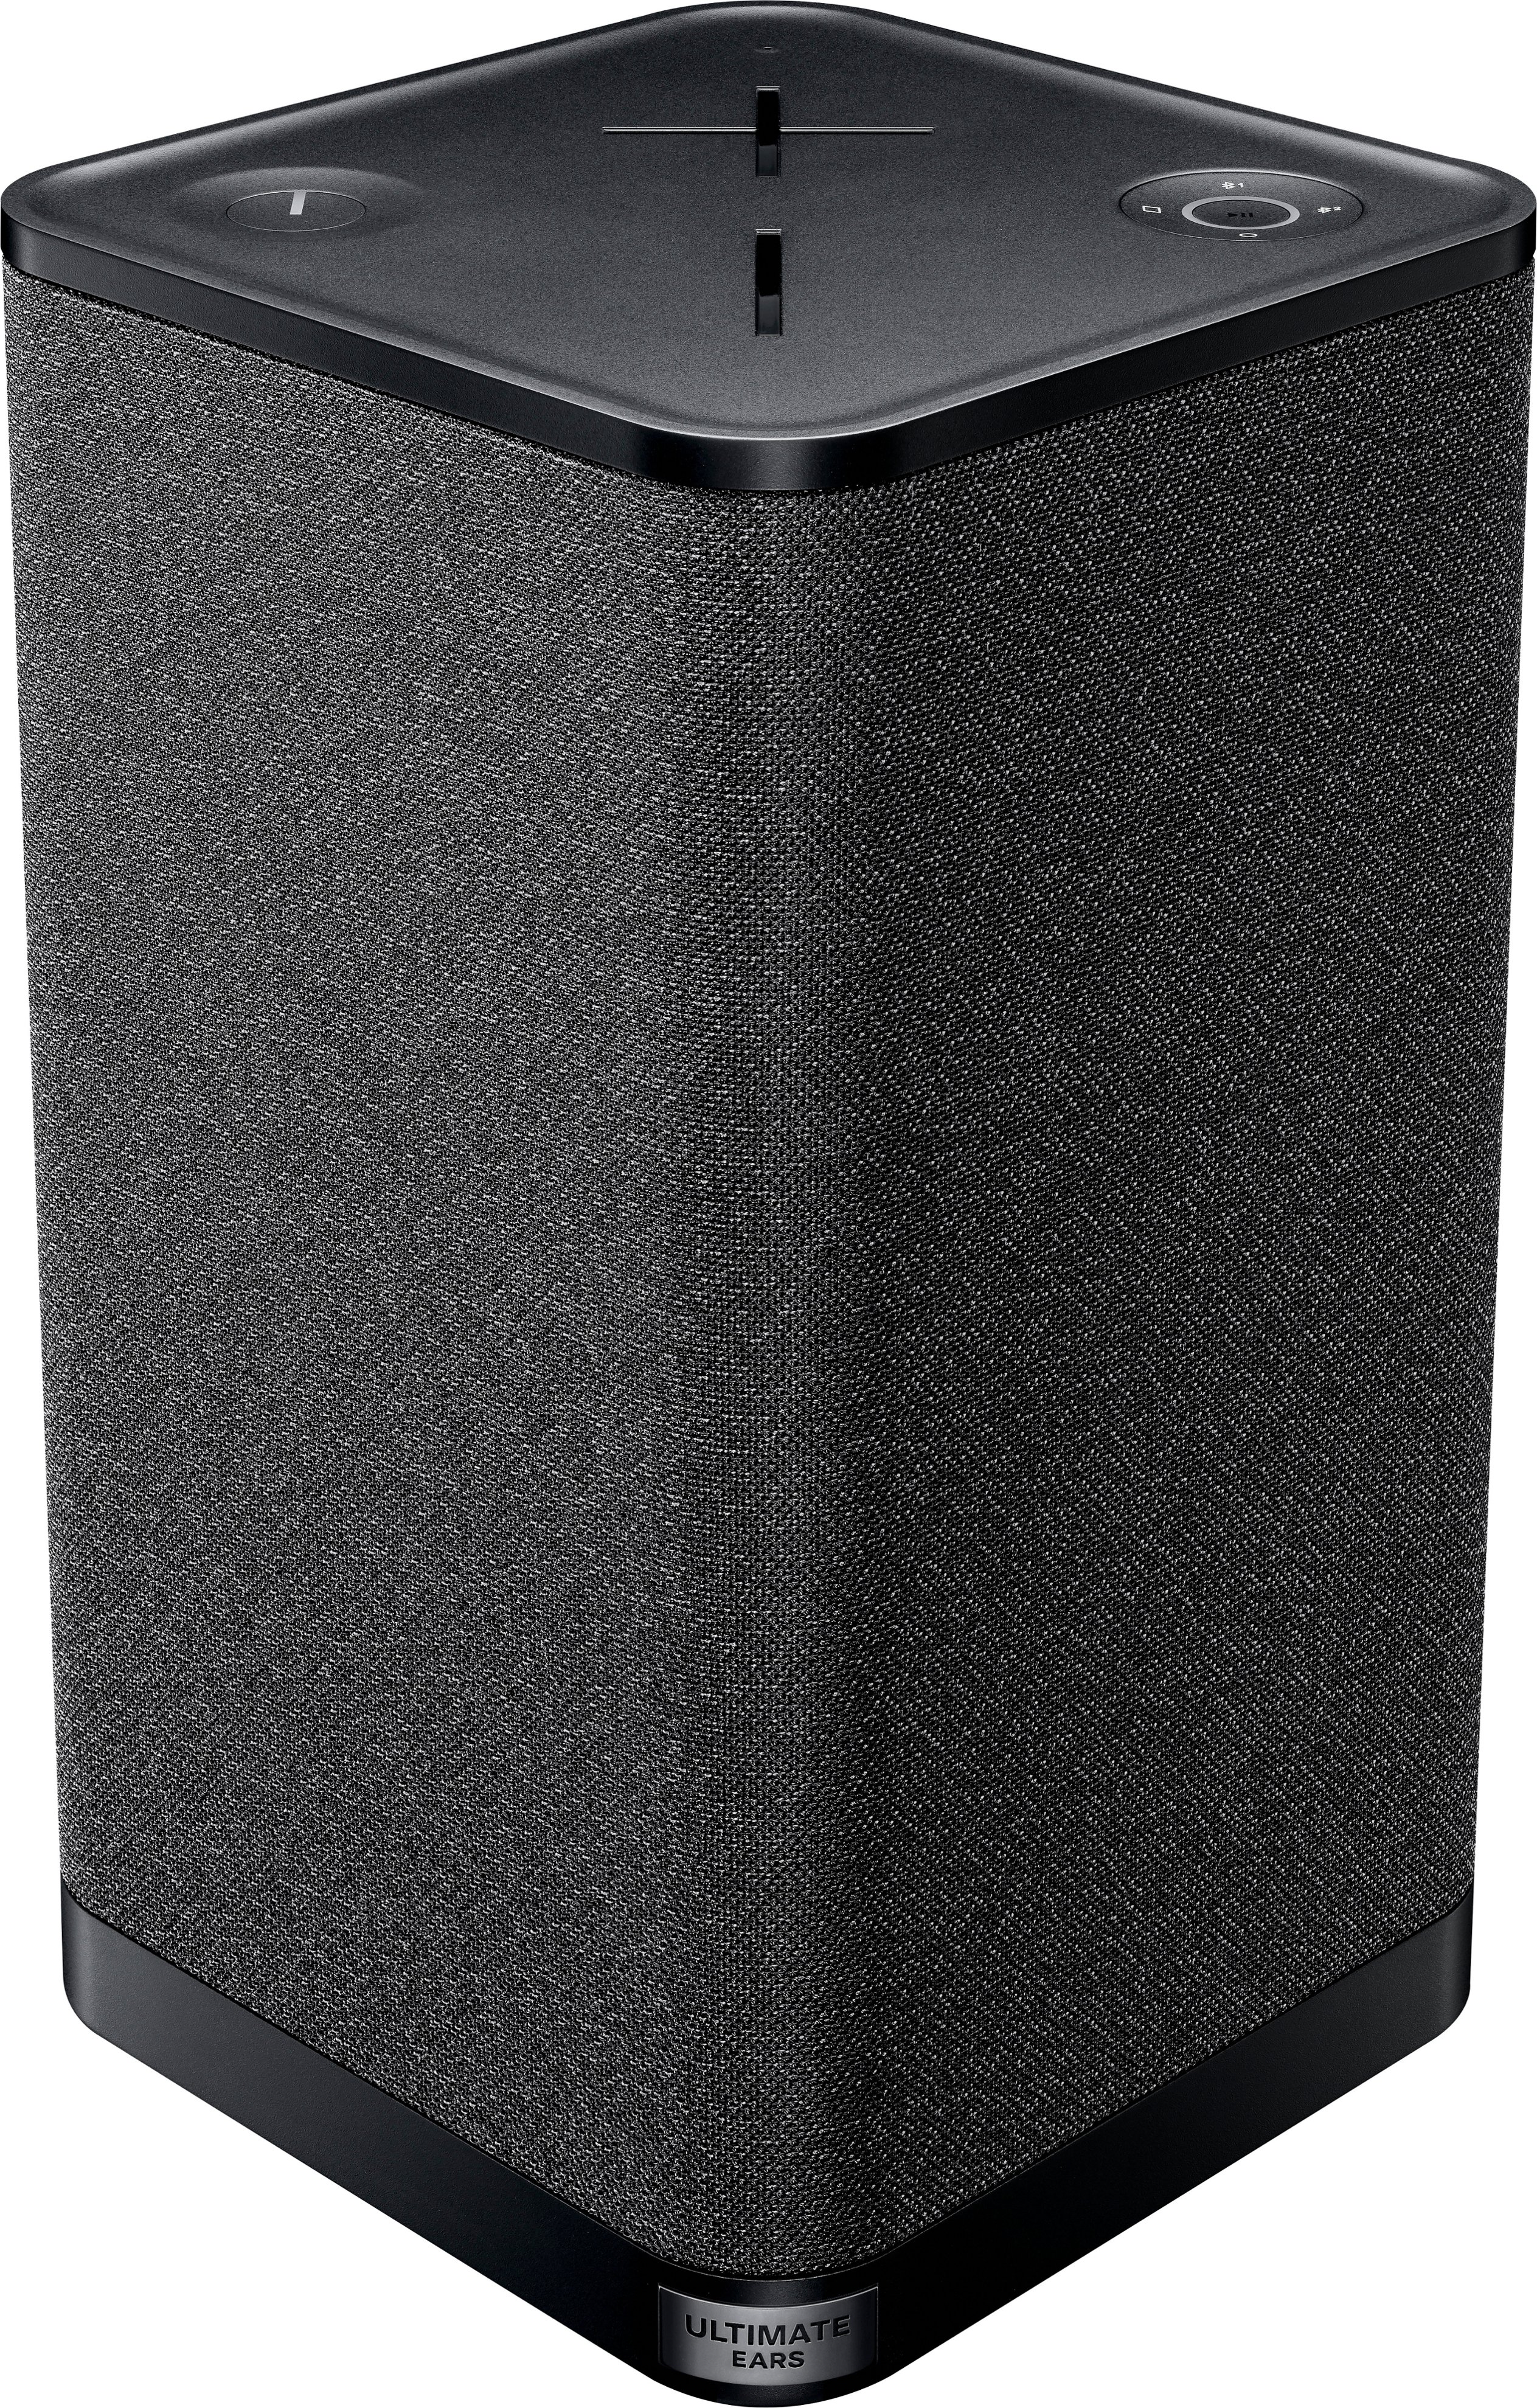 Productiviteit Vergelden ethisch Ultimate Ears HYPERBOOM Portable Bluetooth Waterproof Speaker with Big Bass  Black 984-001591 - Best Buy